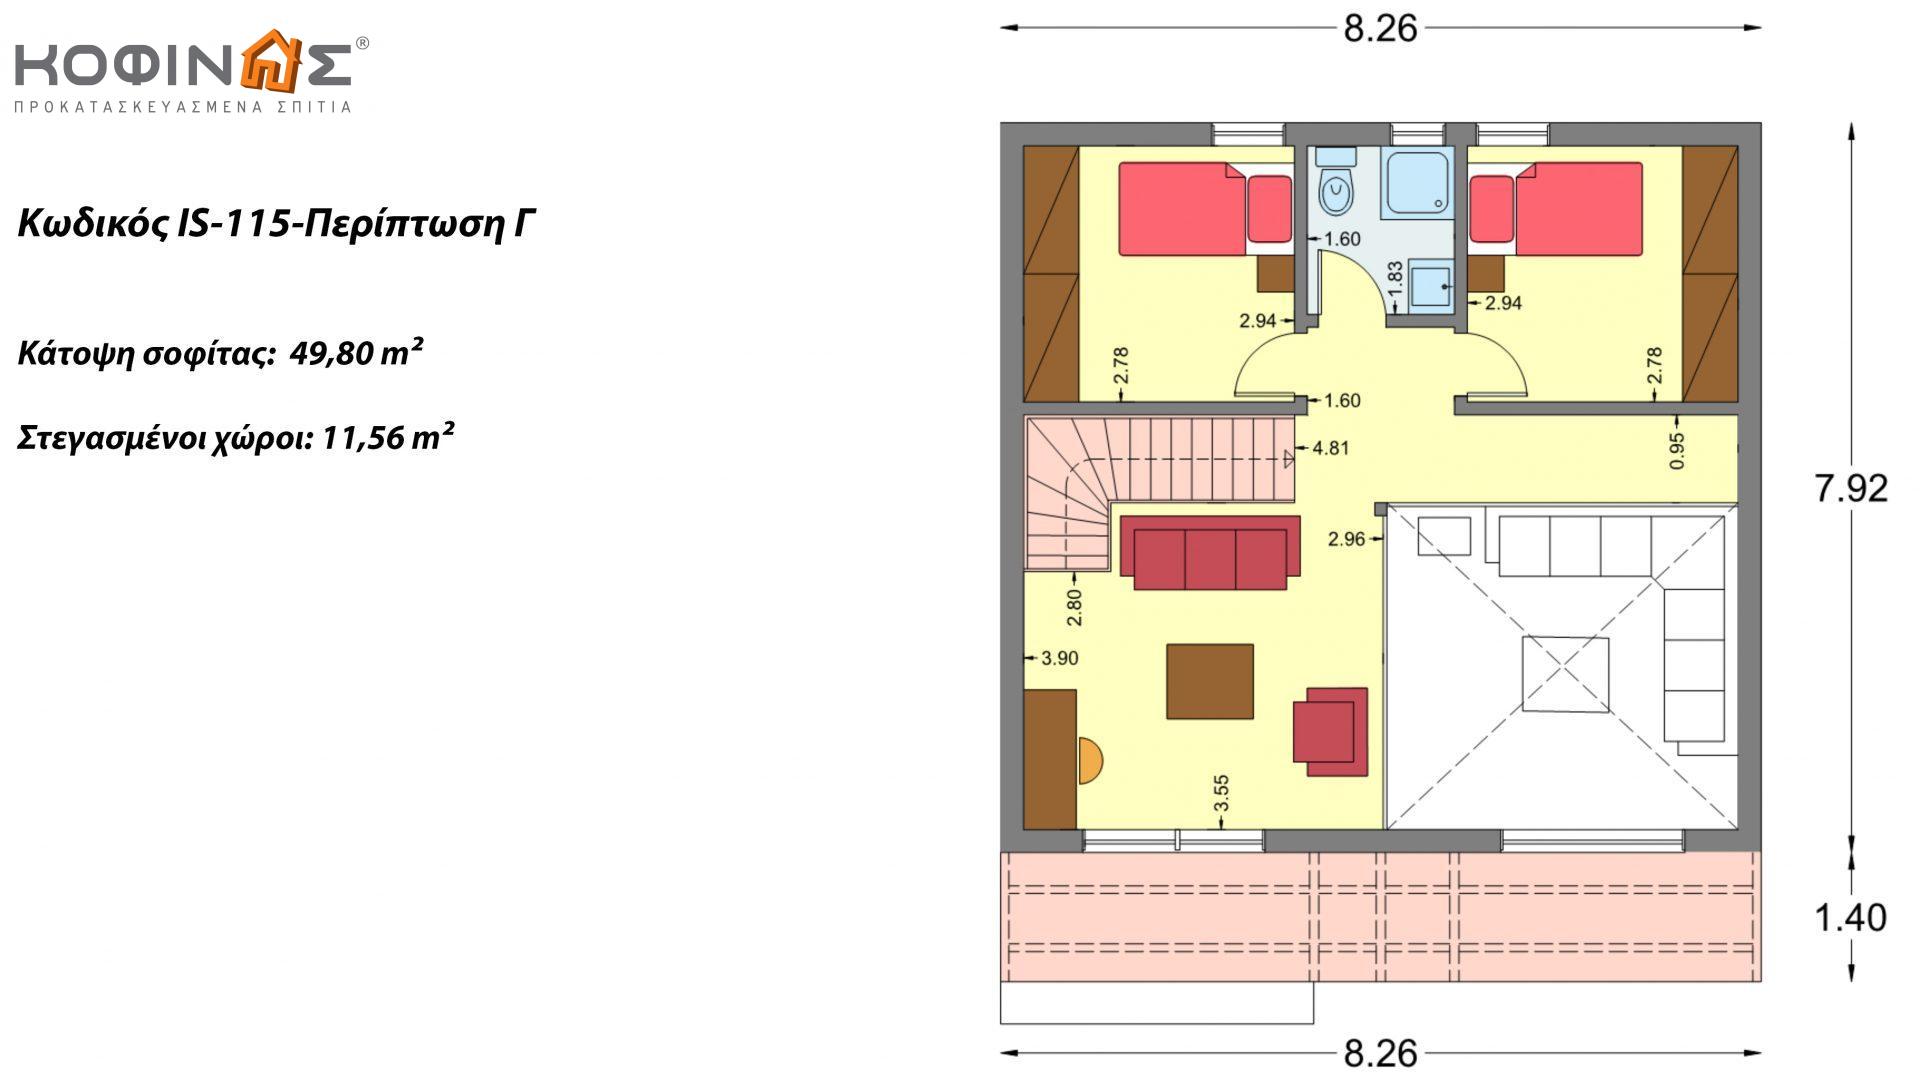 Ισόγεια Κατοικία με Σοφίτα IS-115, συνολικής επιφάνειας 115,18 τ.μ. ,συνολική επιφάνεια στεγασμένων χώρων 32,27 τ.μ.